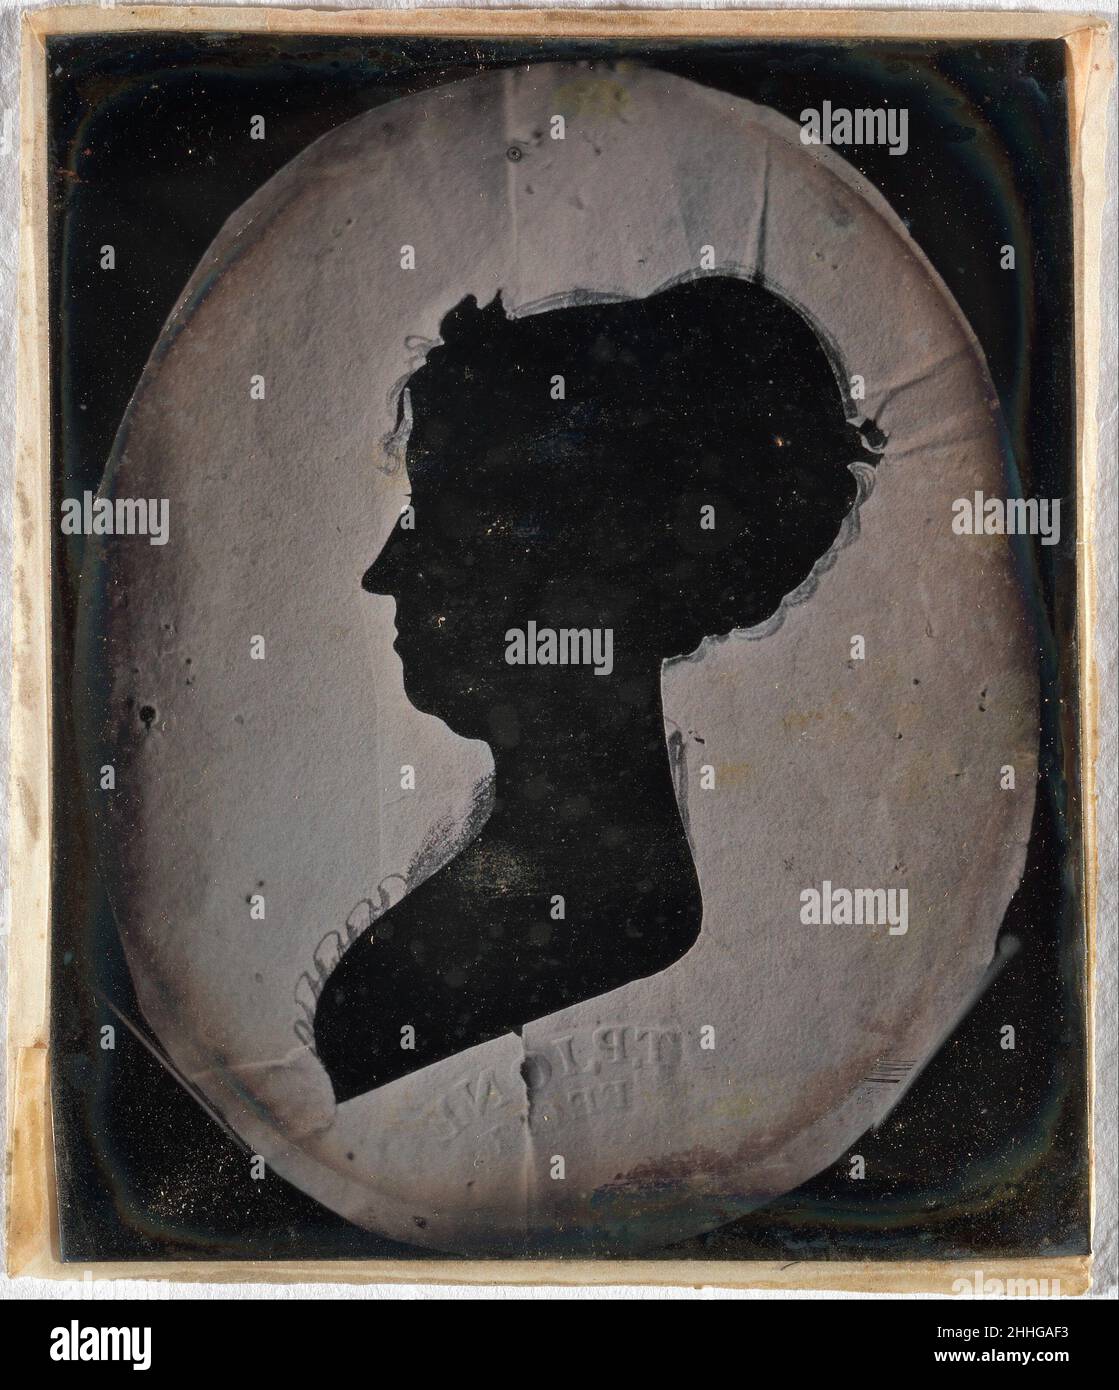 [Paper Silhouette Portrait of a Woman] 1840s–50s Unbekannte Silhouetten und Fotografien haben einen ähnlichen Ursprung im Schlagschatten. Durch die Nachverfolgung des Schattens einer Person entstand ein Silhouette-Porträt, das als bleibende Erinnerung an eine flüchtige Präsenz diente – eine Eleganz, die auf den einfachen Prinzipien von Licht und Dunkelheit basiert – und durch die chemische Fixierung eines Schattens einige der frühesten bekannten Fotografien hervorbrachte, Die selbst Silhouetten von Blättern waren, die direkt auf sensibilisiertes Papier gelegt wurden. Das erste fotografische Verfahren, das 1839 vorgestellt wurde, war jedoch der Daguerreotyp, der ein einzigartiges Bild auf einem hochglanzpolierten Bild hervorbrachte Stockfoto